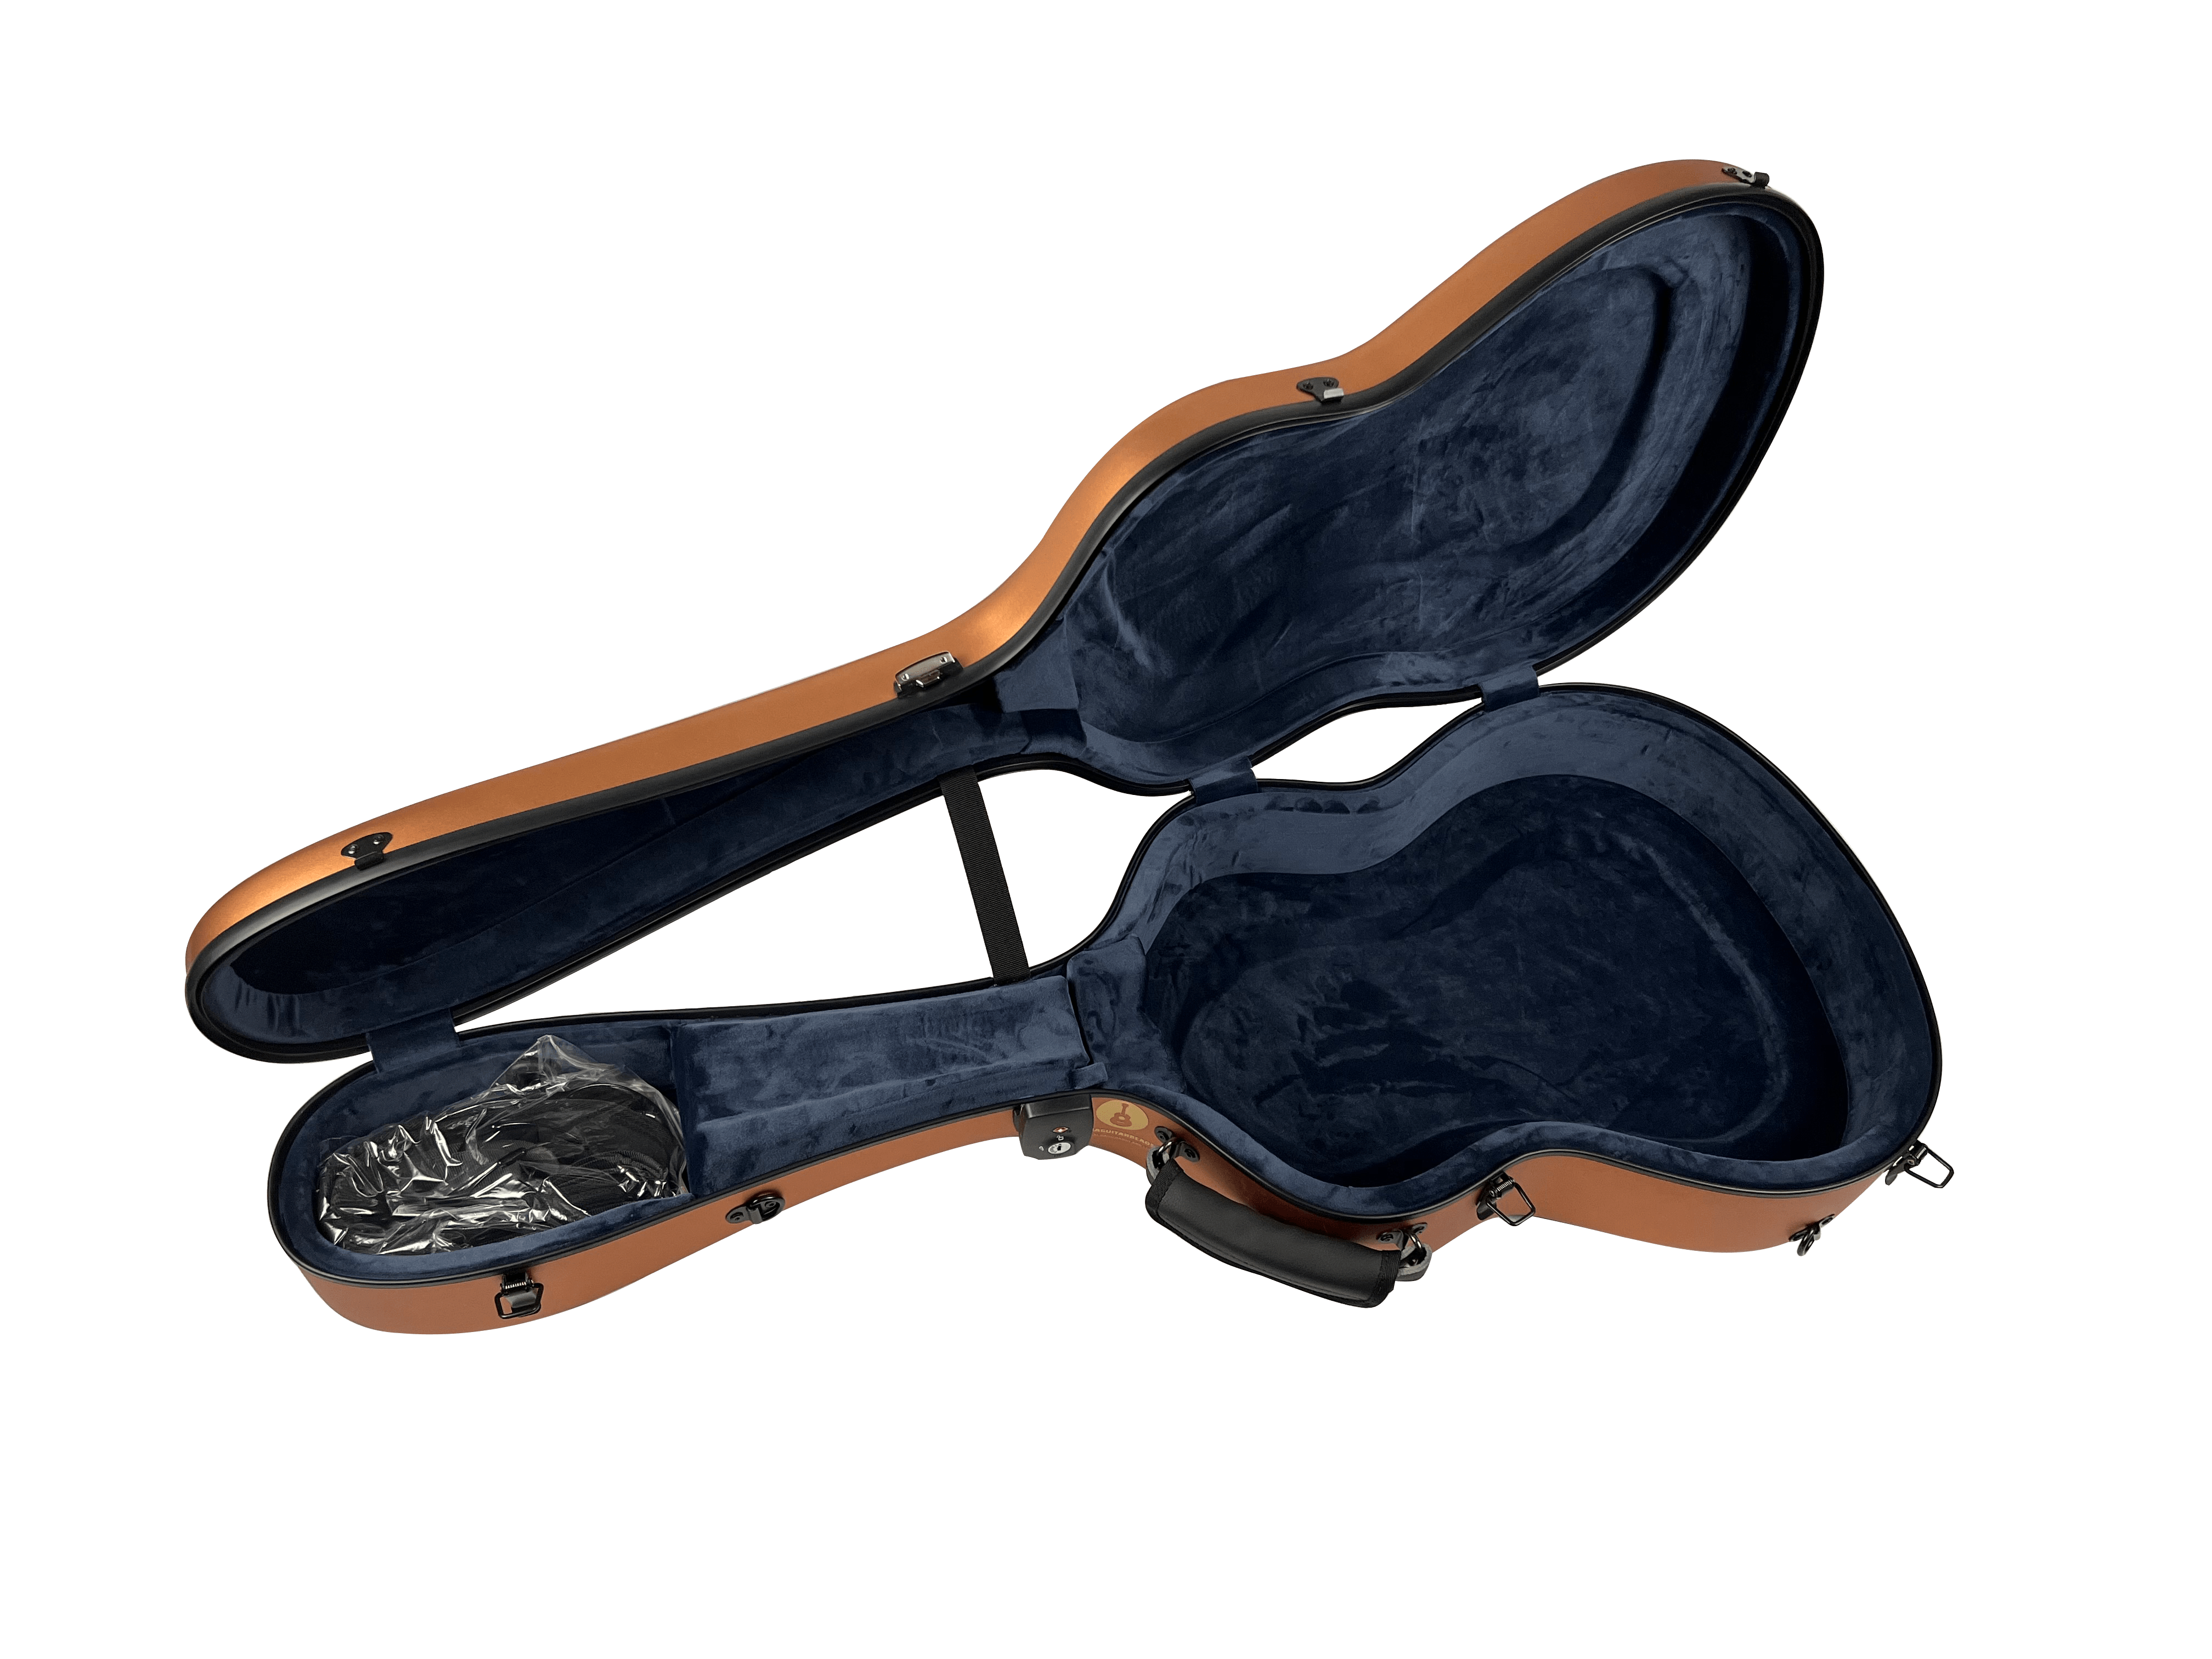 Étui pour guitare classique en Mousse M-case Noir, Bleu Marine-Beige